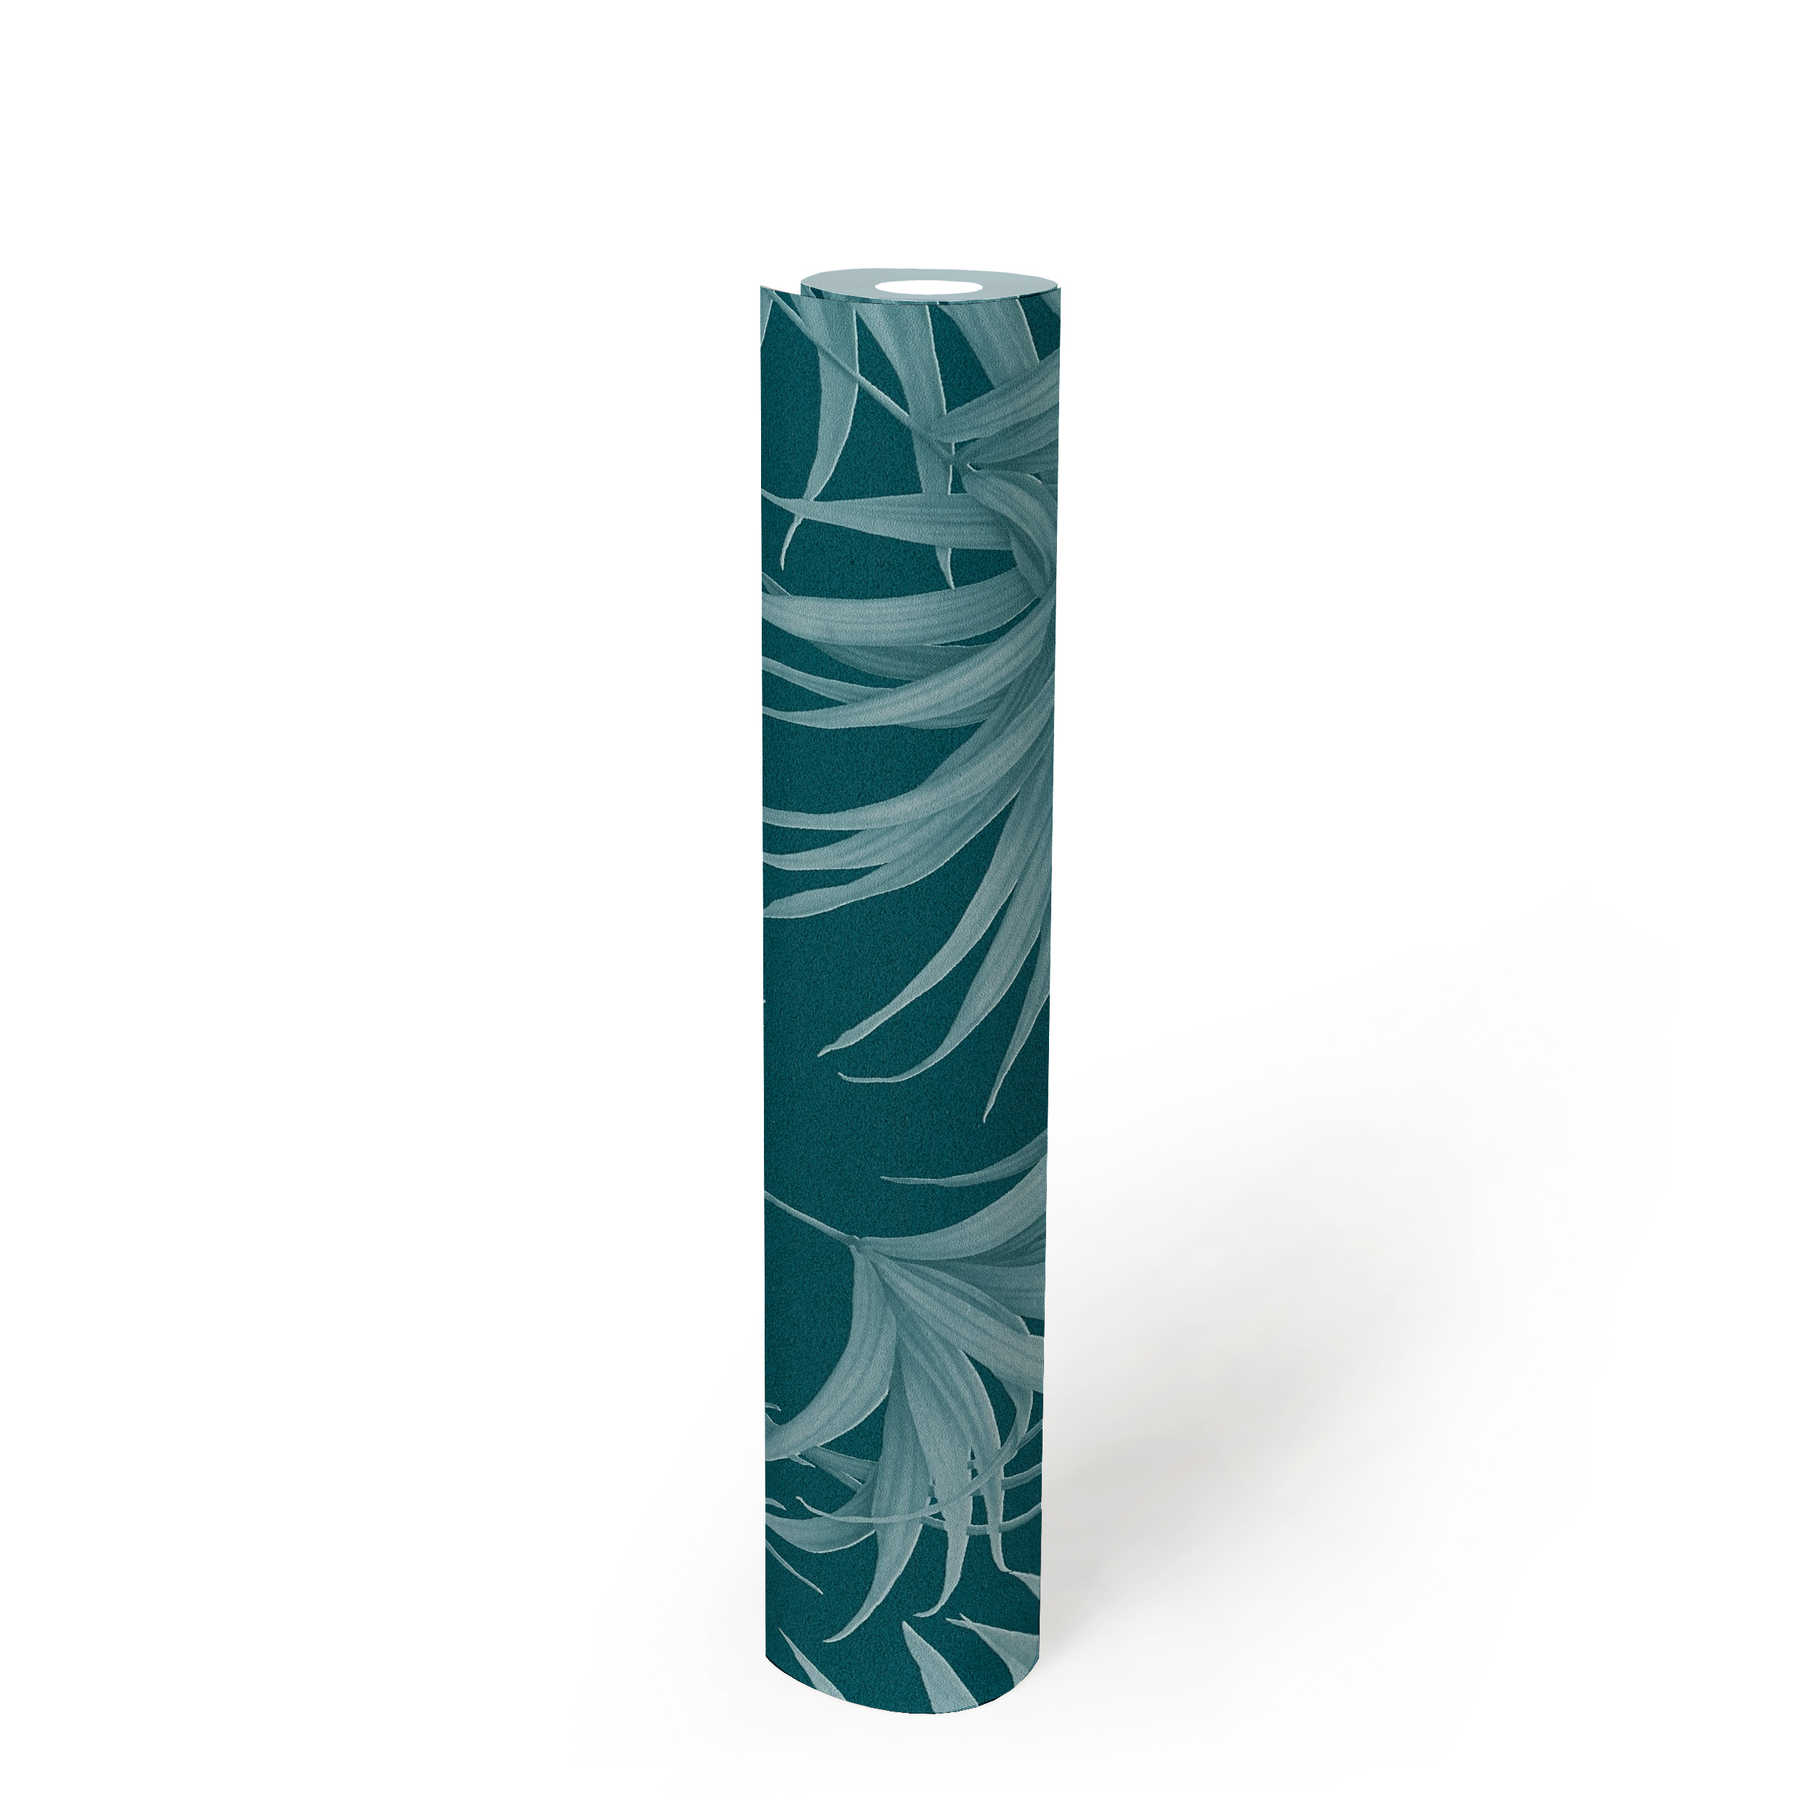             Papel pintado de hojas de palmera con motivo tono sobre tono en color petróleo - azul
        